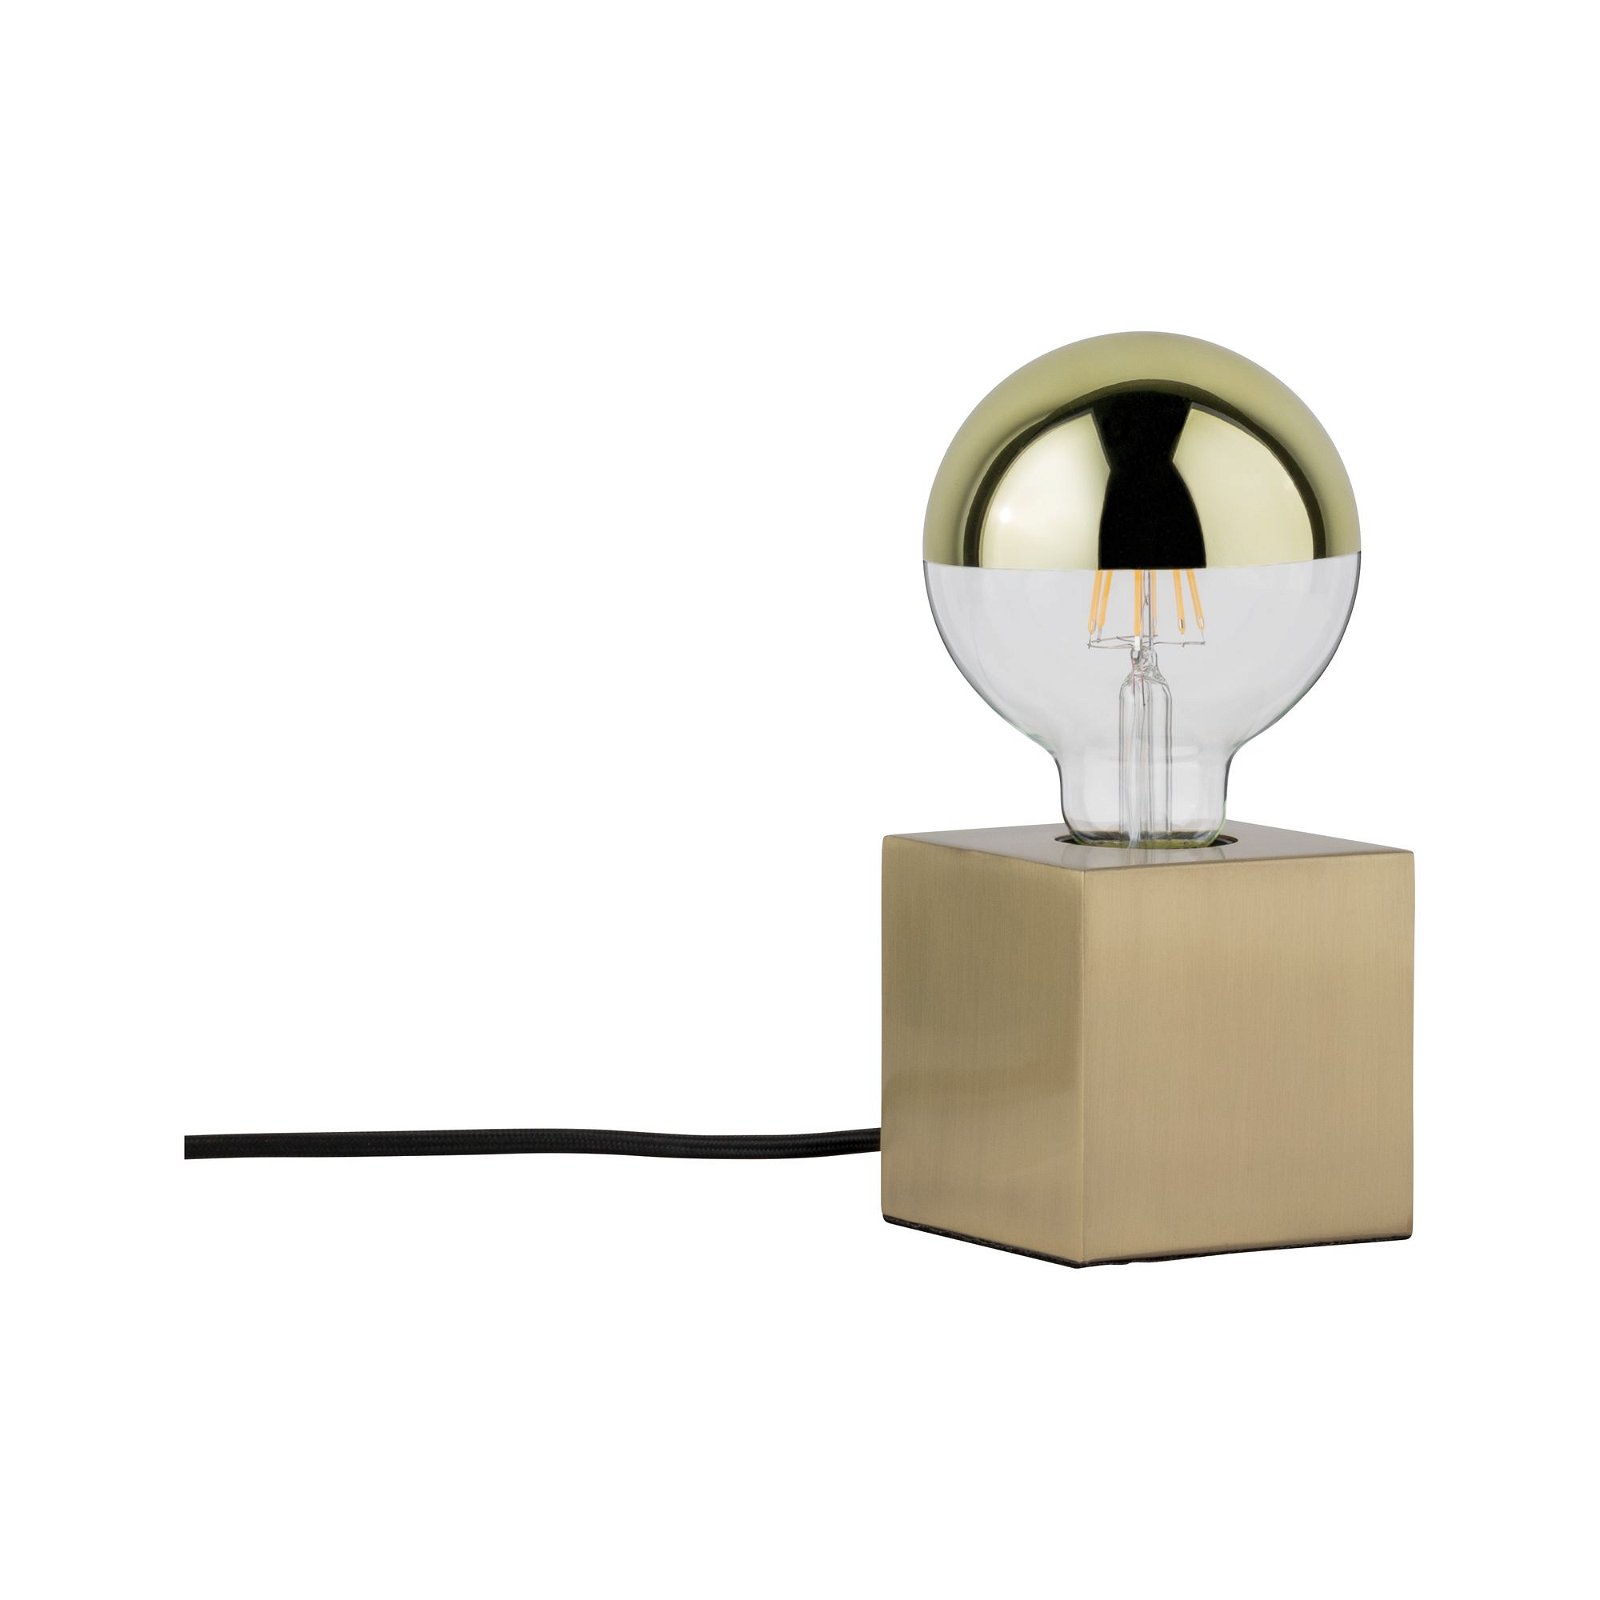 Neordic LED-tafellamp Dilja E27 max. 20W Messing geborsteld Metaal